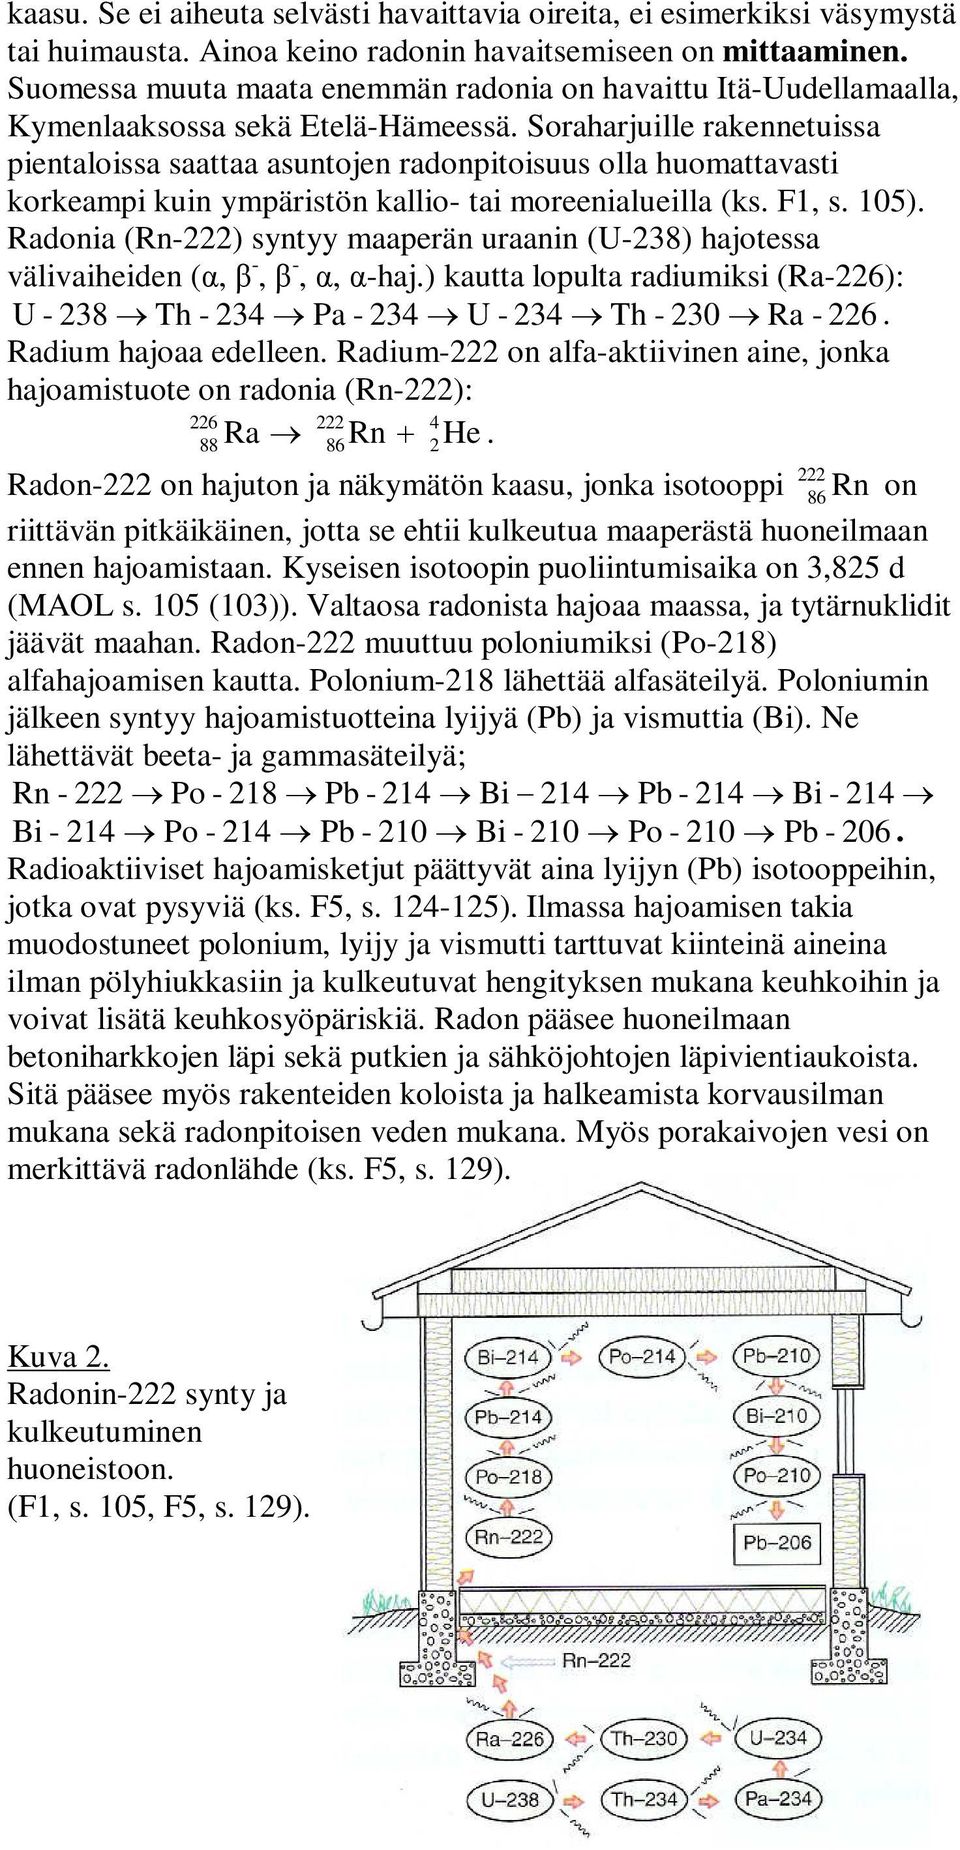 Soraharjuille rakennetuissa pientaloissa saattaa asuntojen radonpitoisuus olla huomattavasti korkeampi kuin ympäristön kallio- tai moreenialueilla (ks. F1, s. 105).